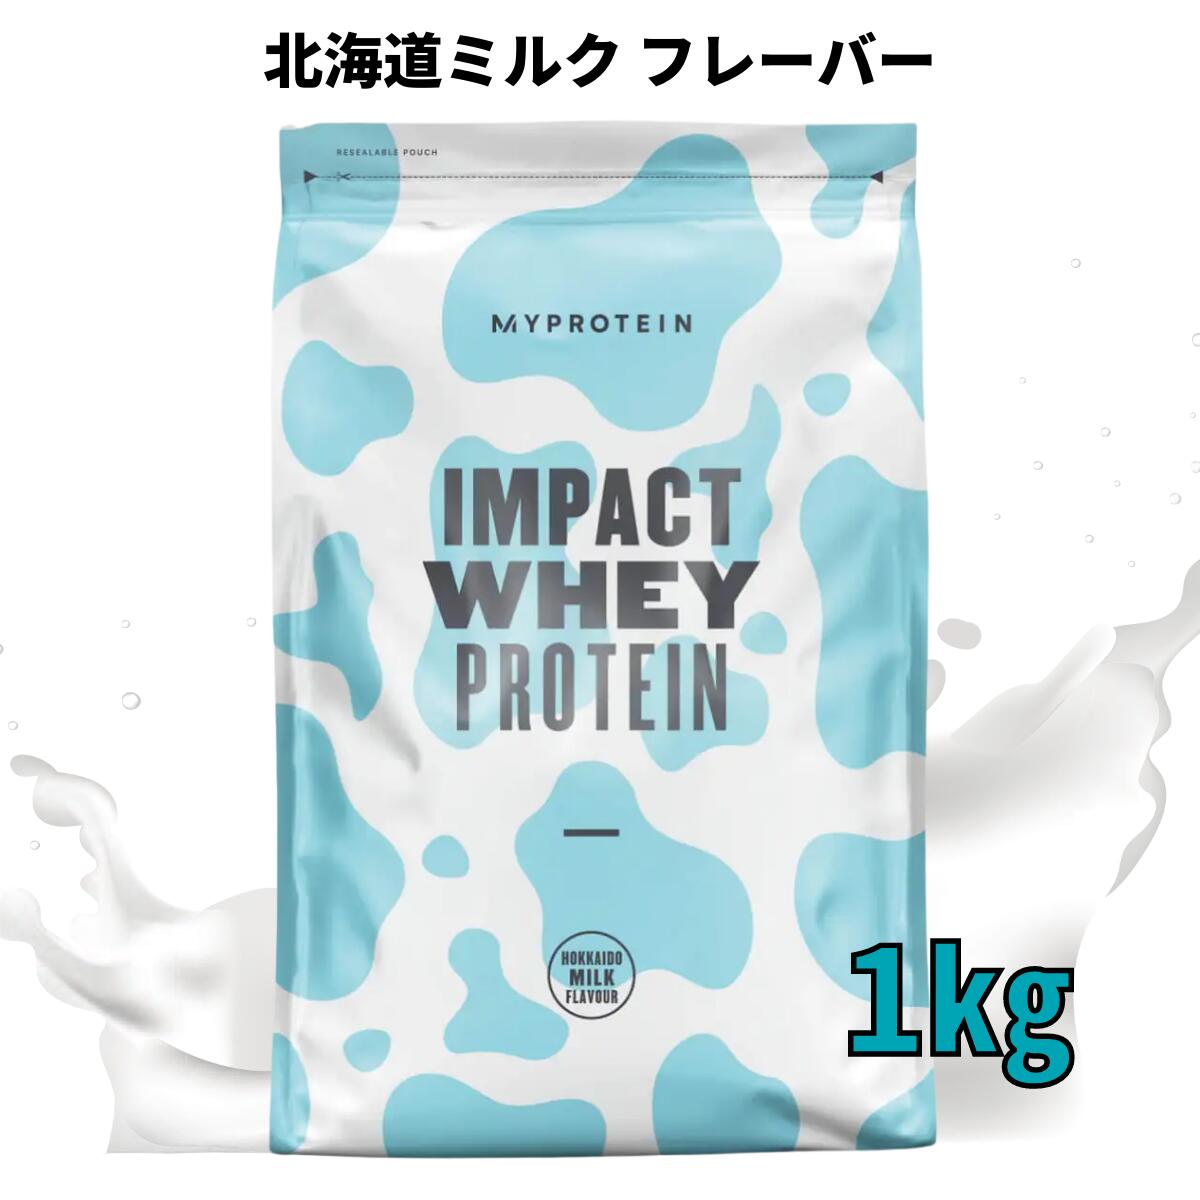 MYPROTEIN IMPACT WHEY PROTEIN 北海道ミルク　1kg